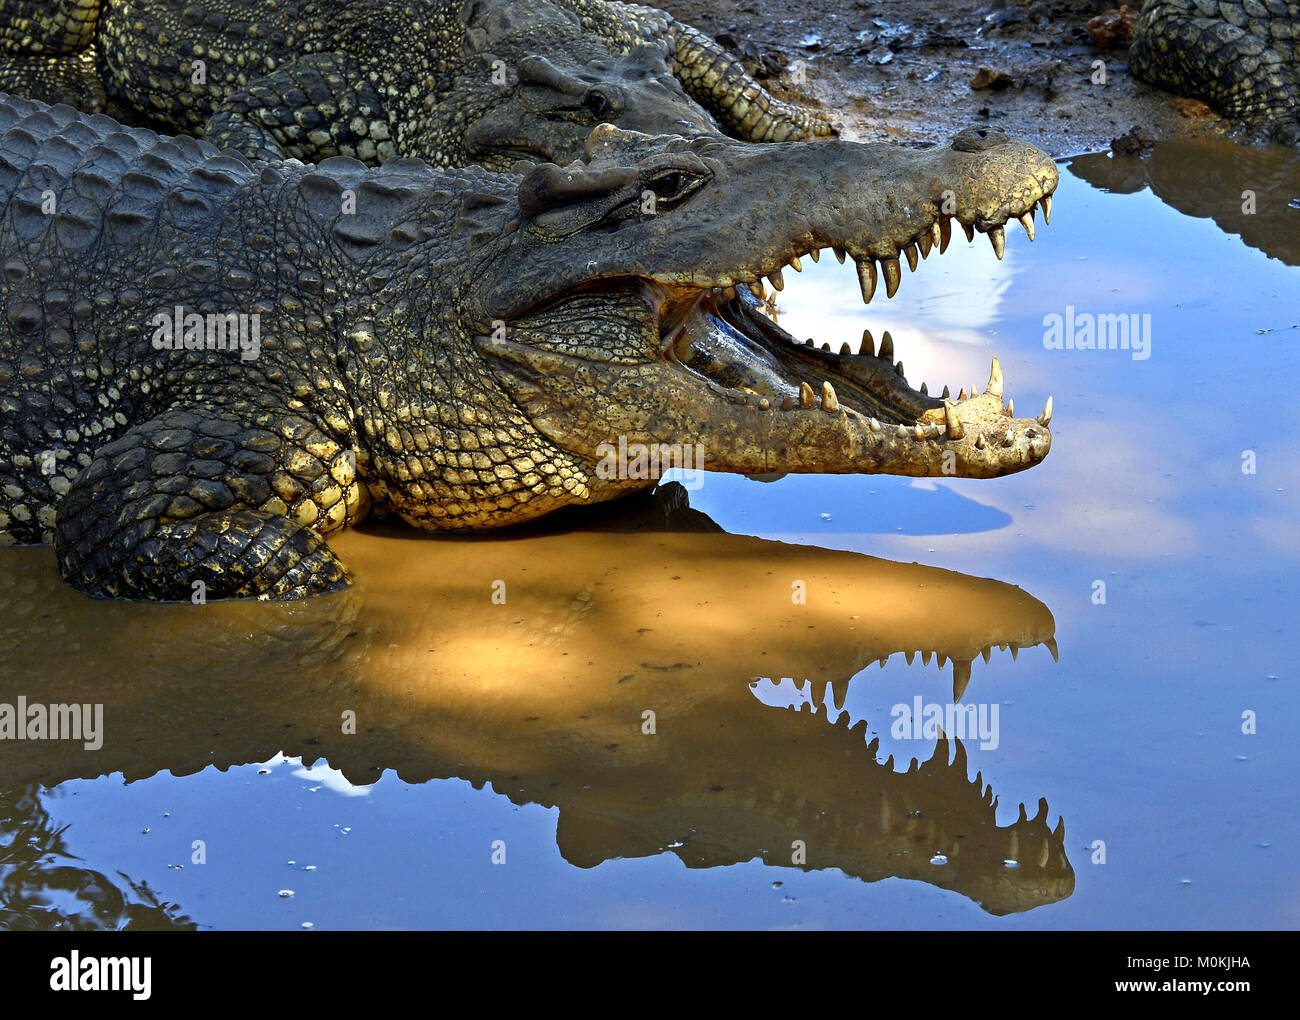 Gruppo di coccodrilli cubano (Crocodylus rhombifer). Immagine scattata in un parco naturale dell'isola di Cuba Foto Stock